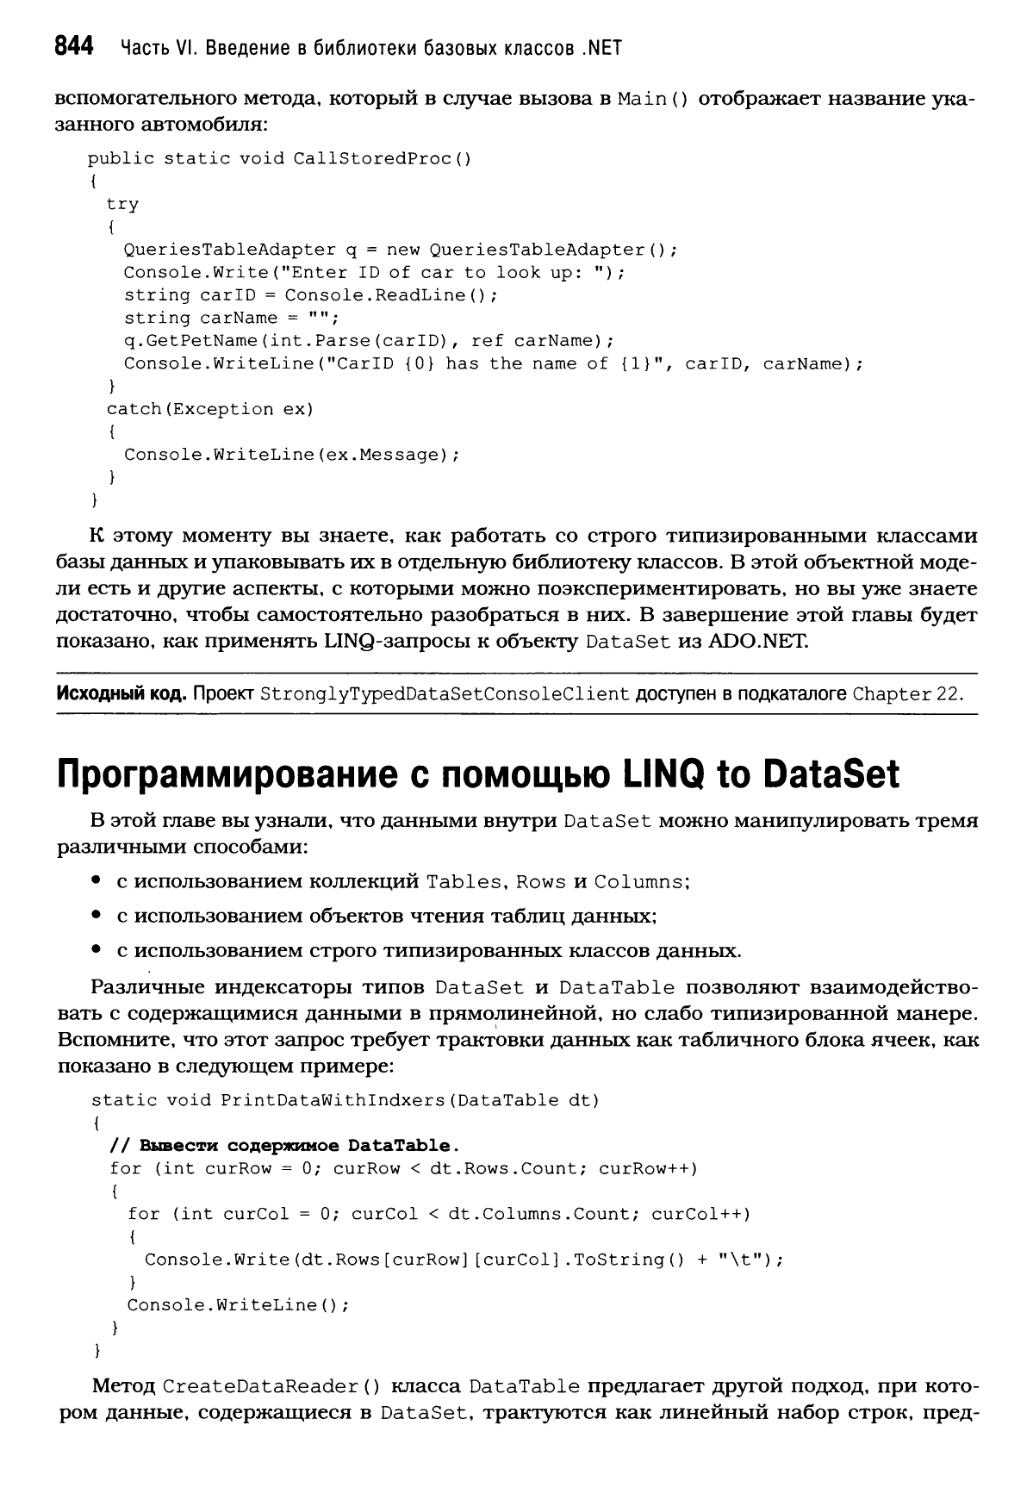 Программирование с помощью LINQ to DataSet